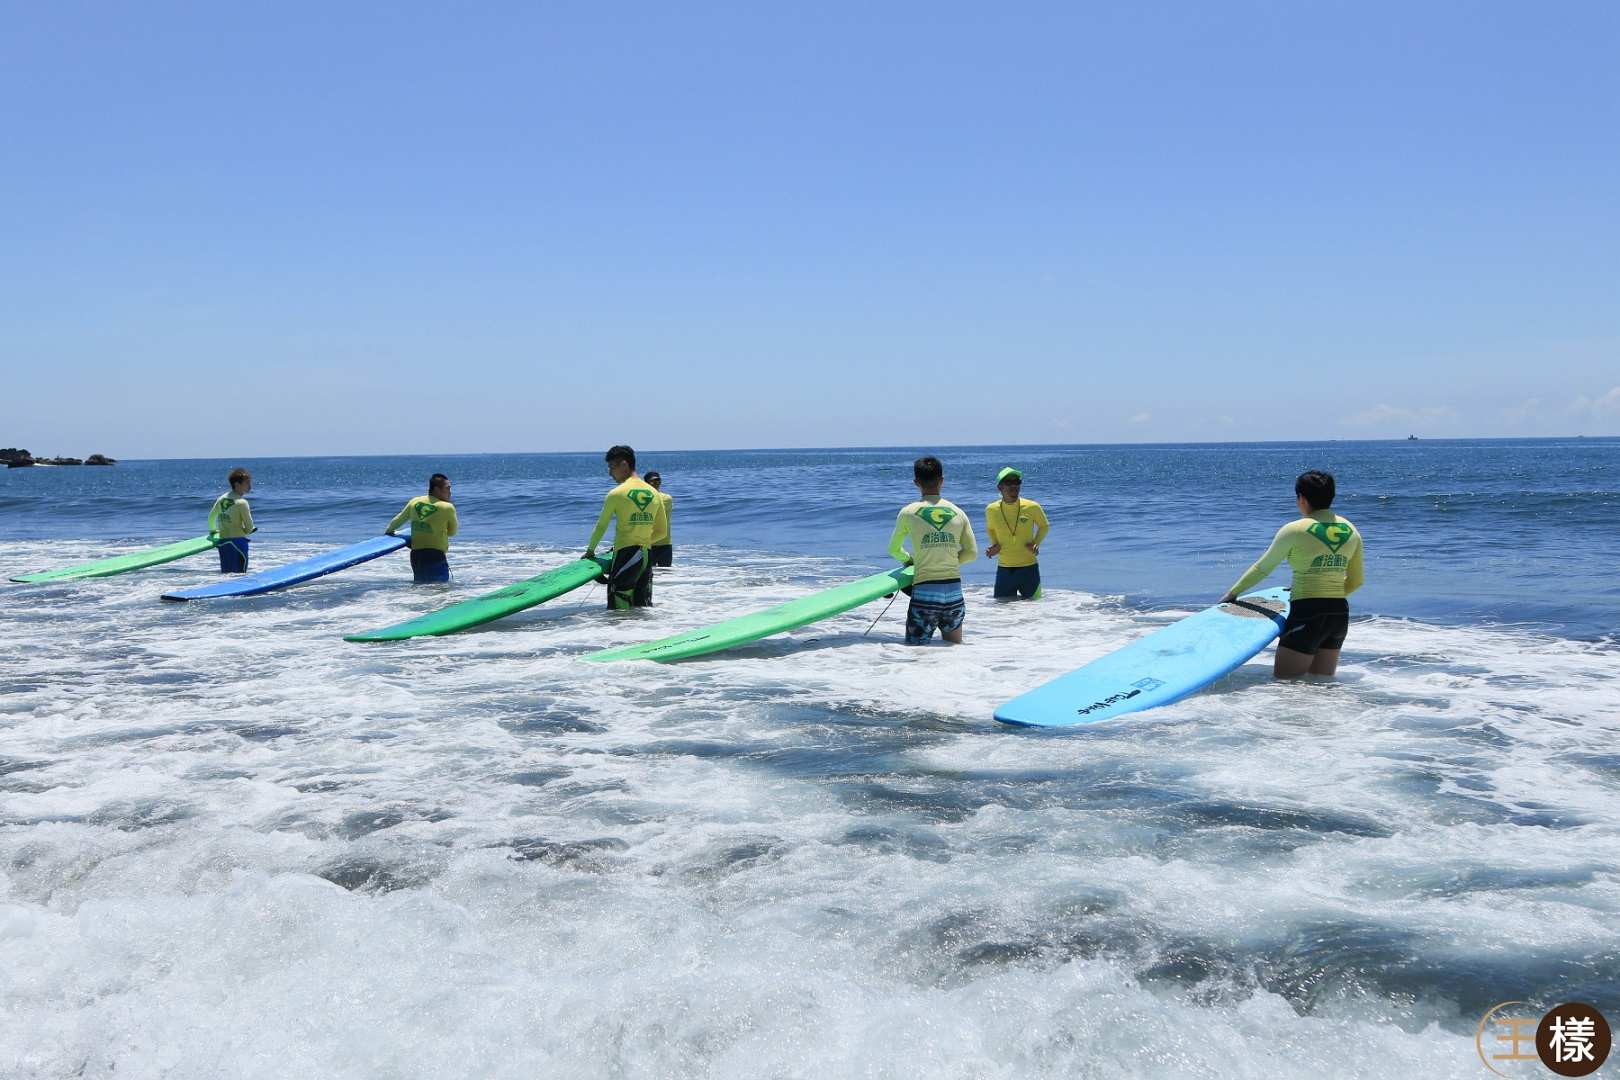 宜蘭-外澳雙獅衝浪新手教學體驗| 水上活動推薦